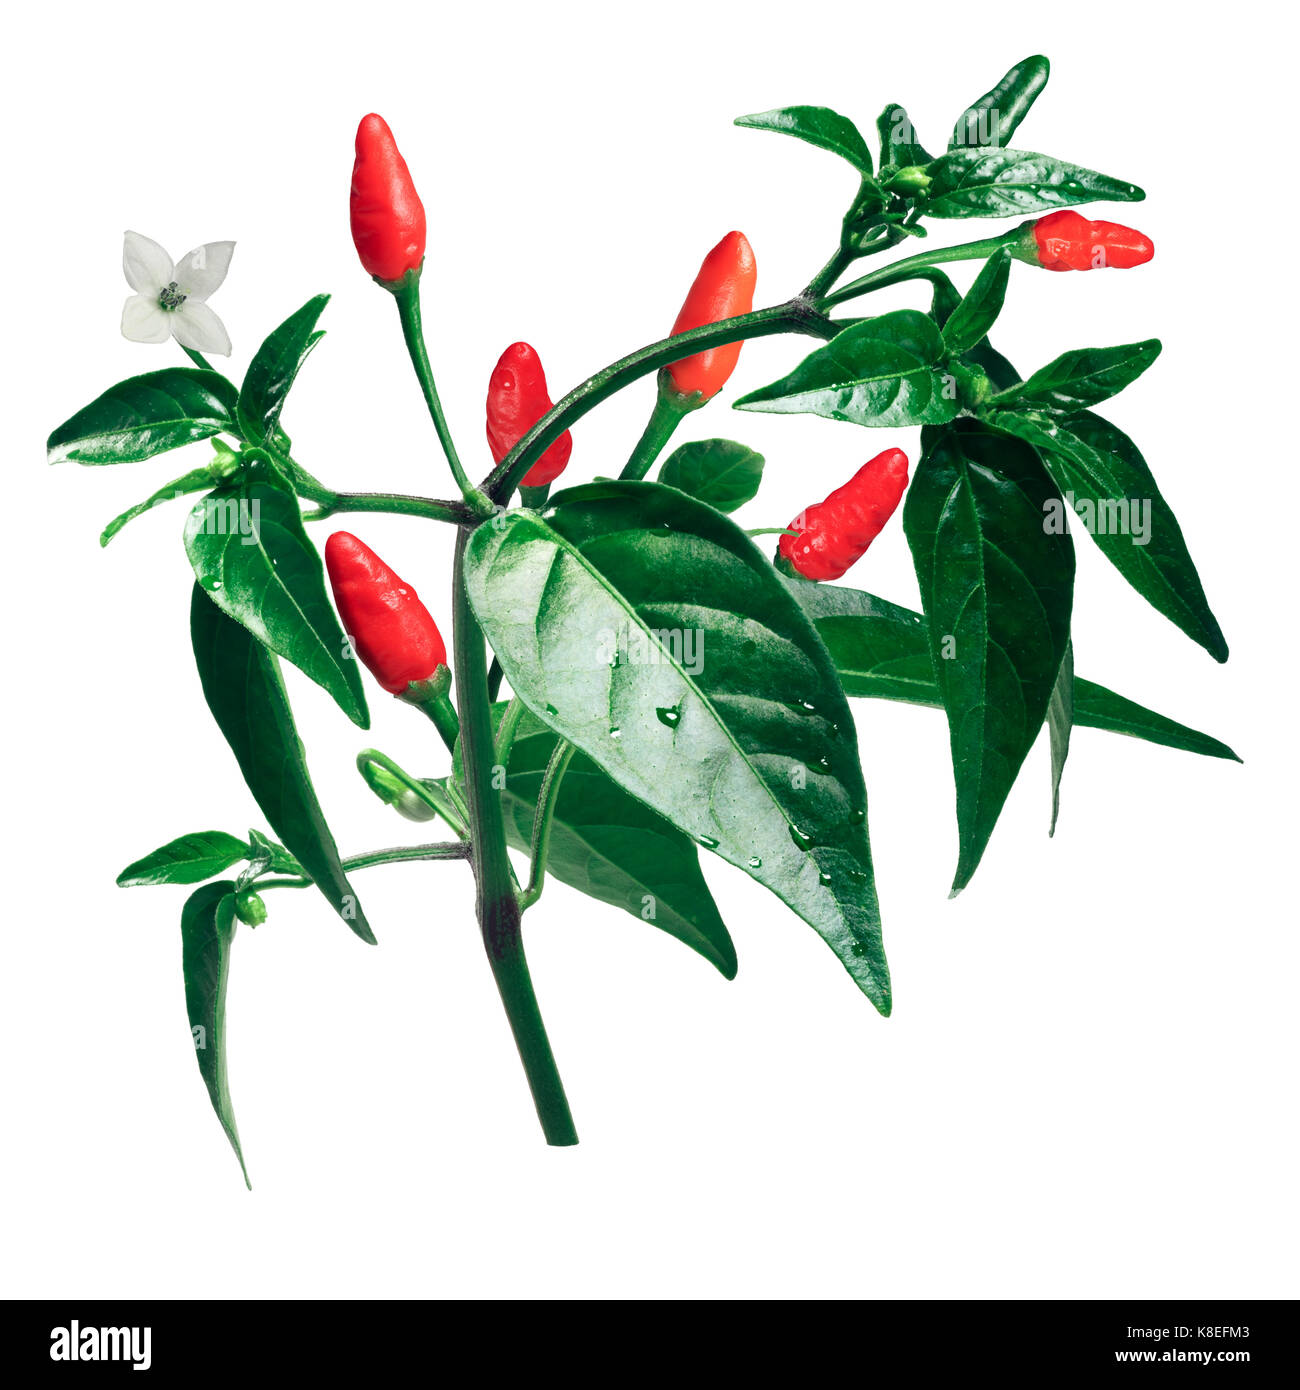 Pequin ou piment piquin, plante aux fruits (Capsicum annuum var. glabriusculum). chemin de détourage Banque D'Images